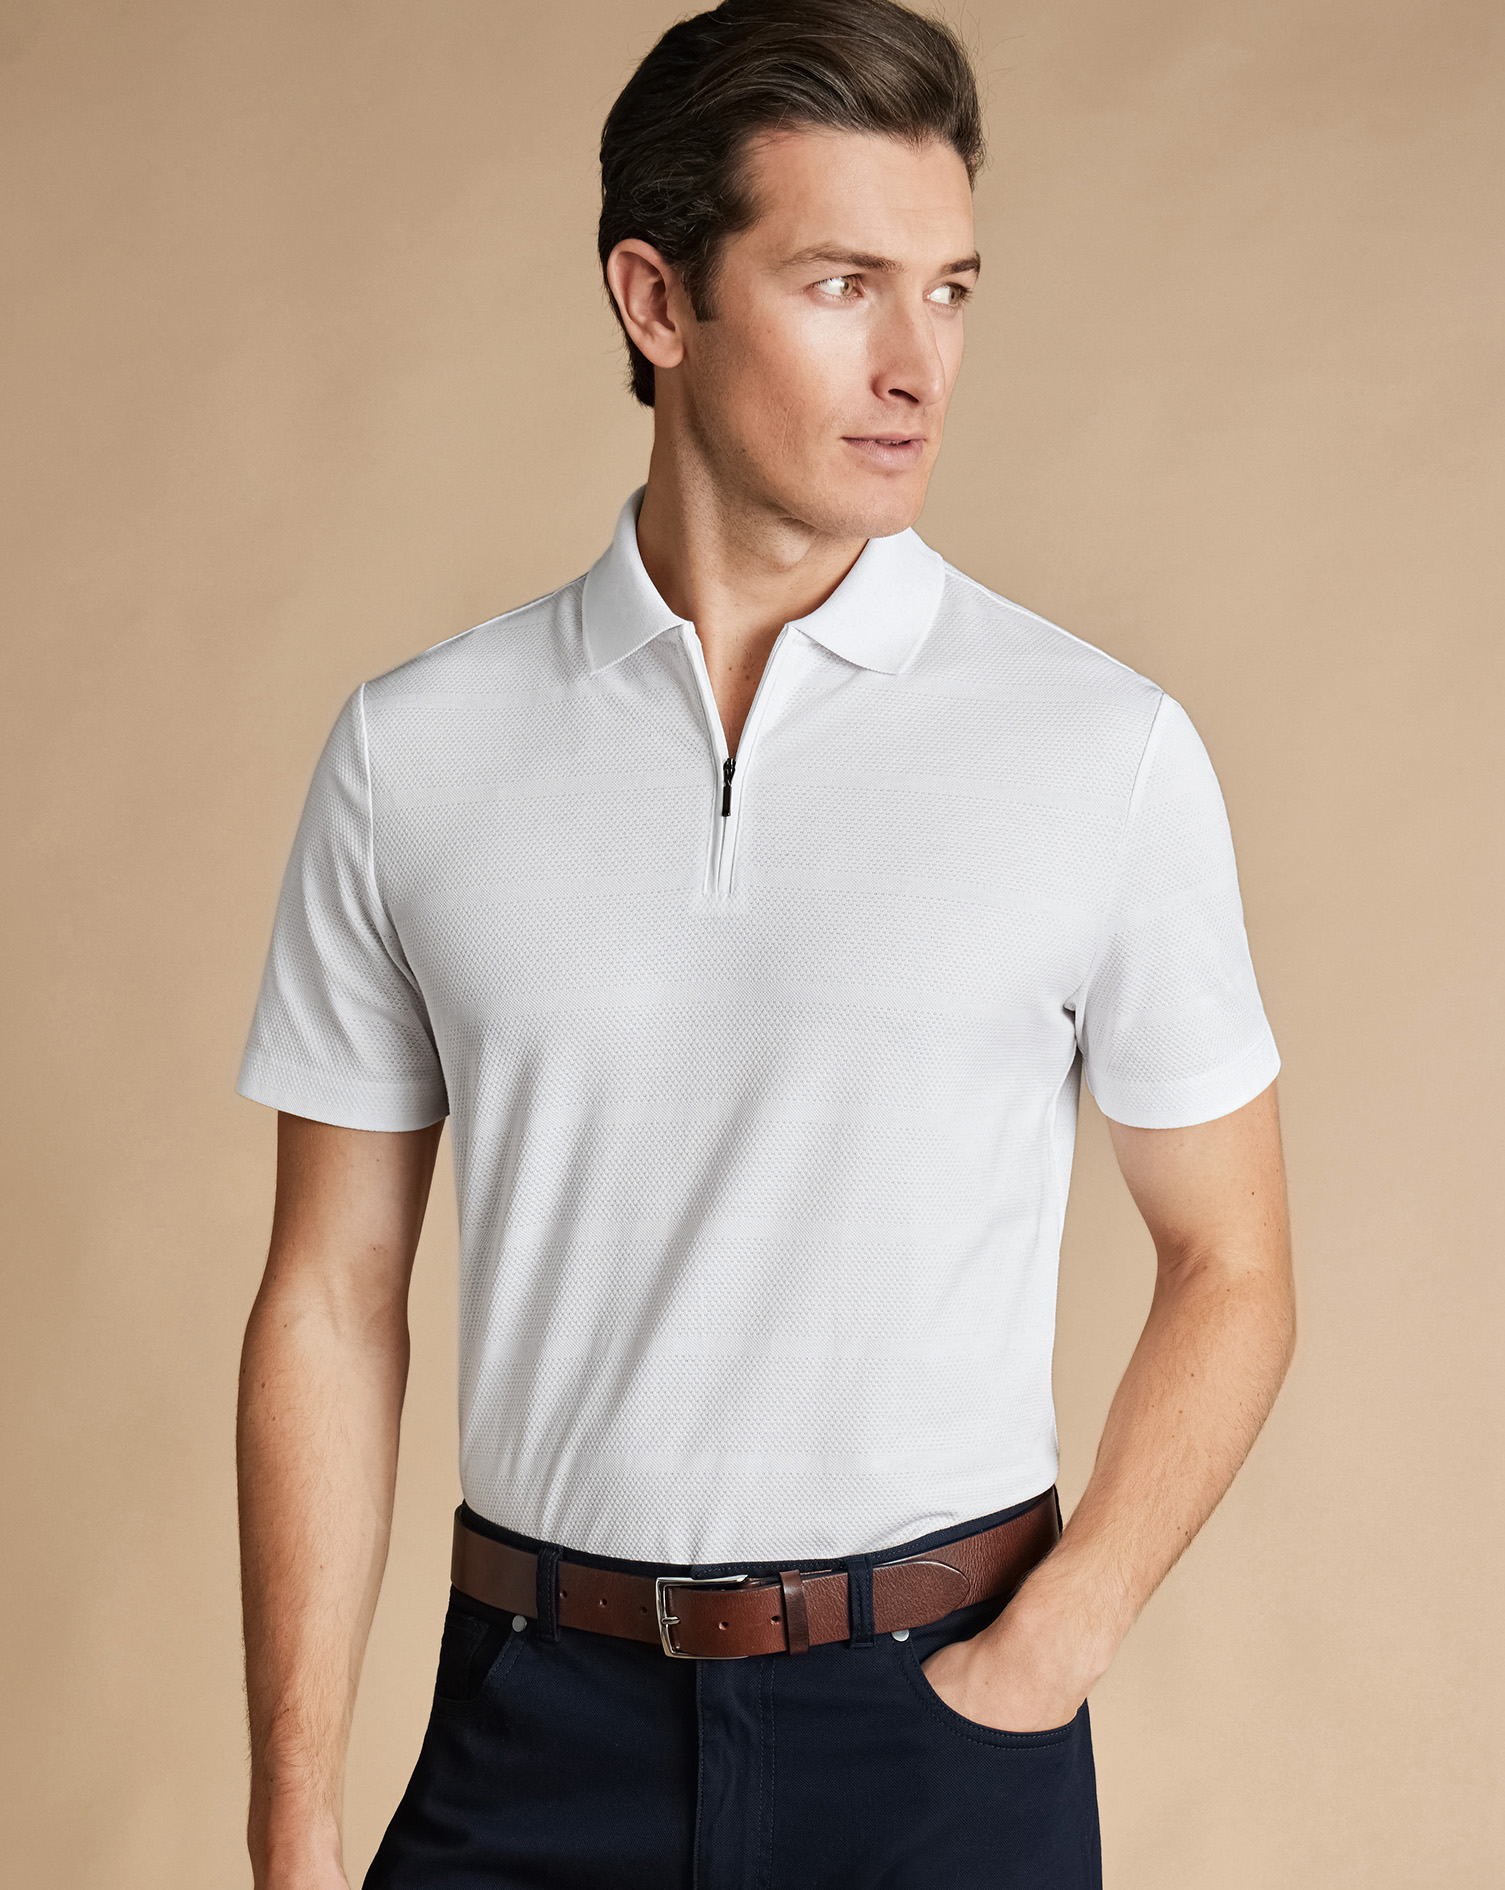 Men's Charles Tyrwhitt Popcorn Textured Tyrwhitt Cool Zip-Neck Stripe Polo Shirt - White Size Small 